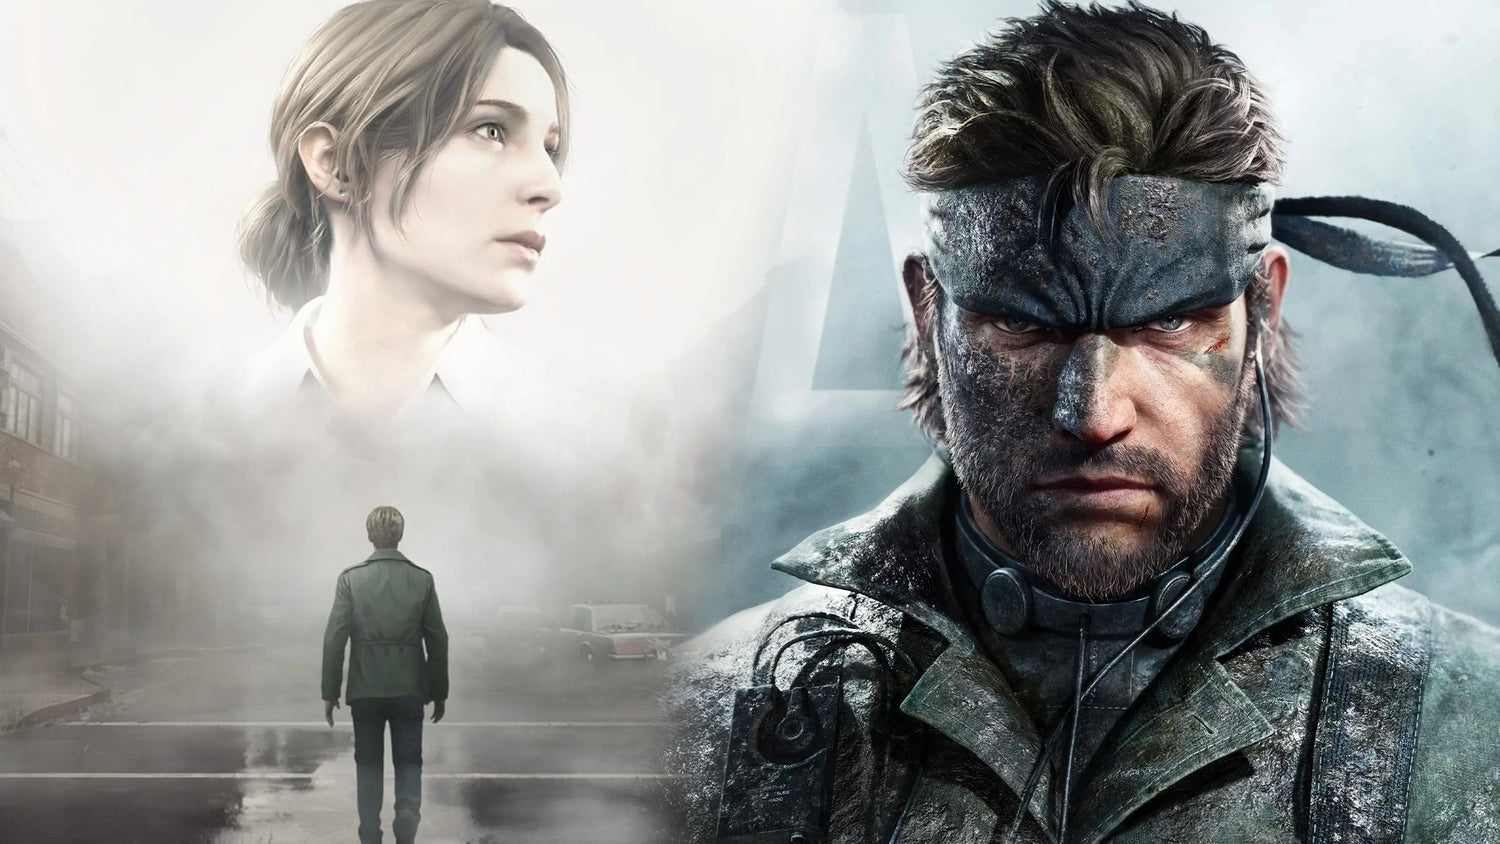 Los remakes de Silent Hill 2 y Metal Gear Solid 3 podrían llegar este año | #TuDosisGeek